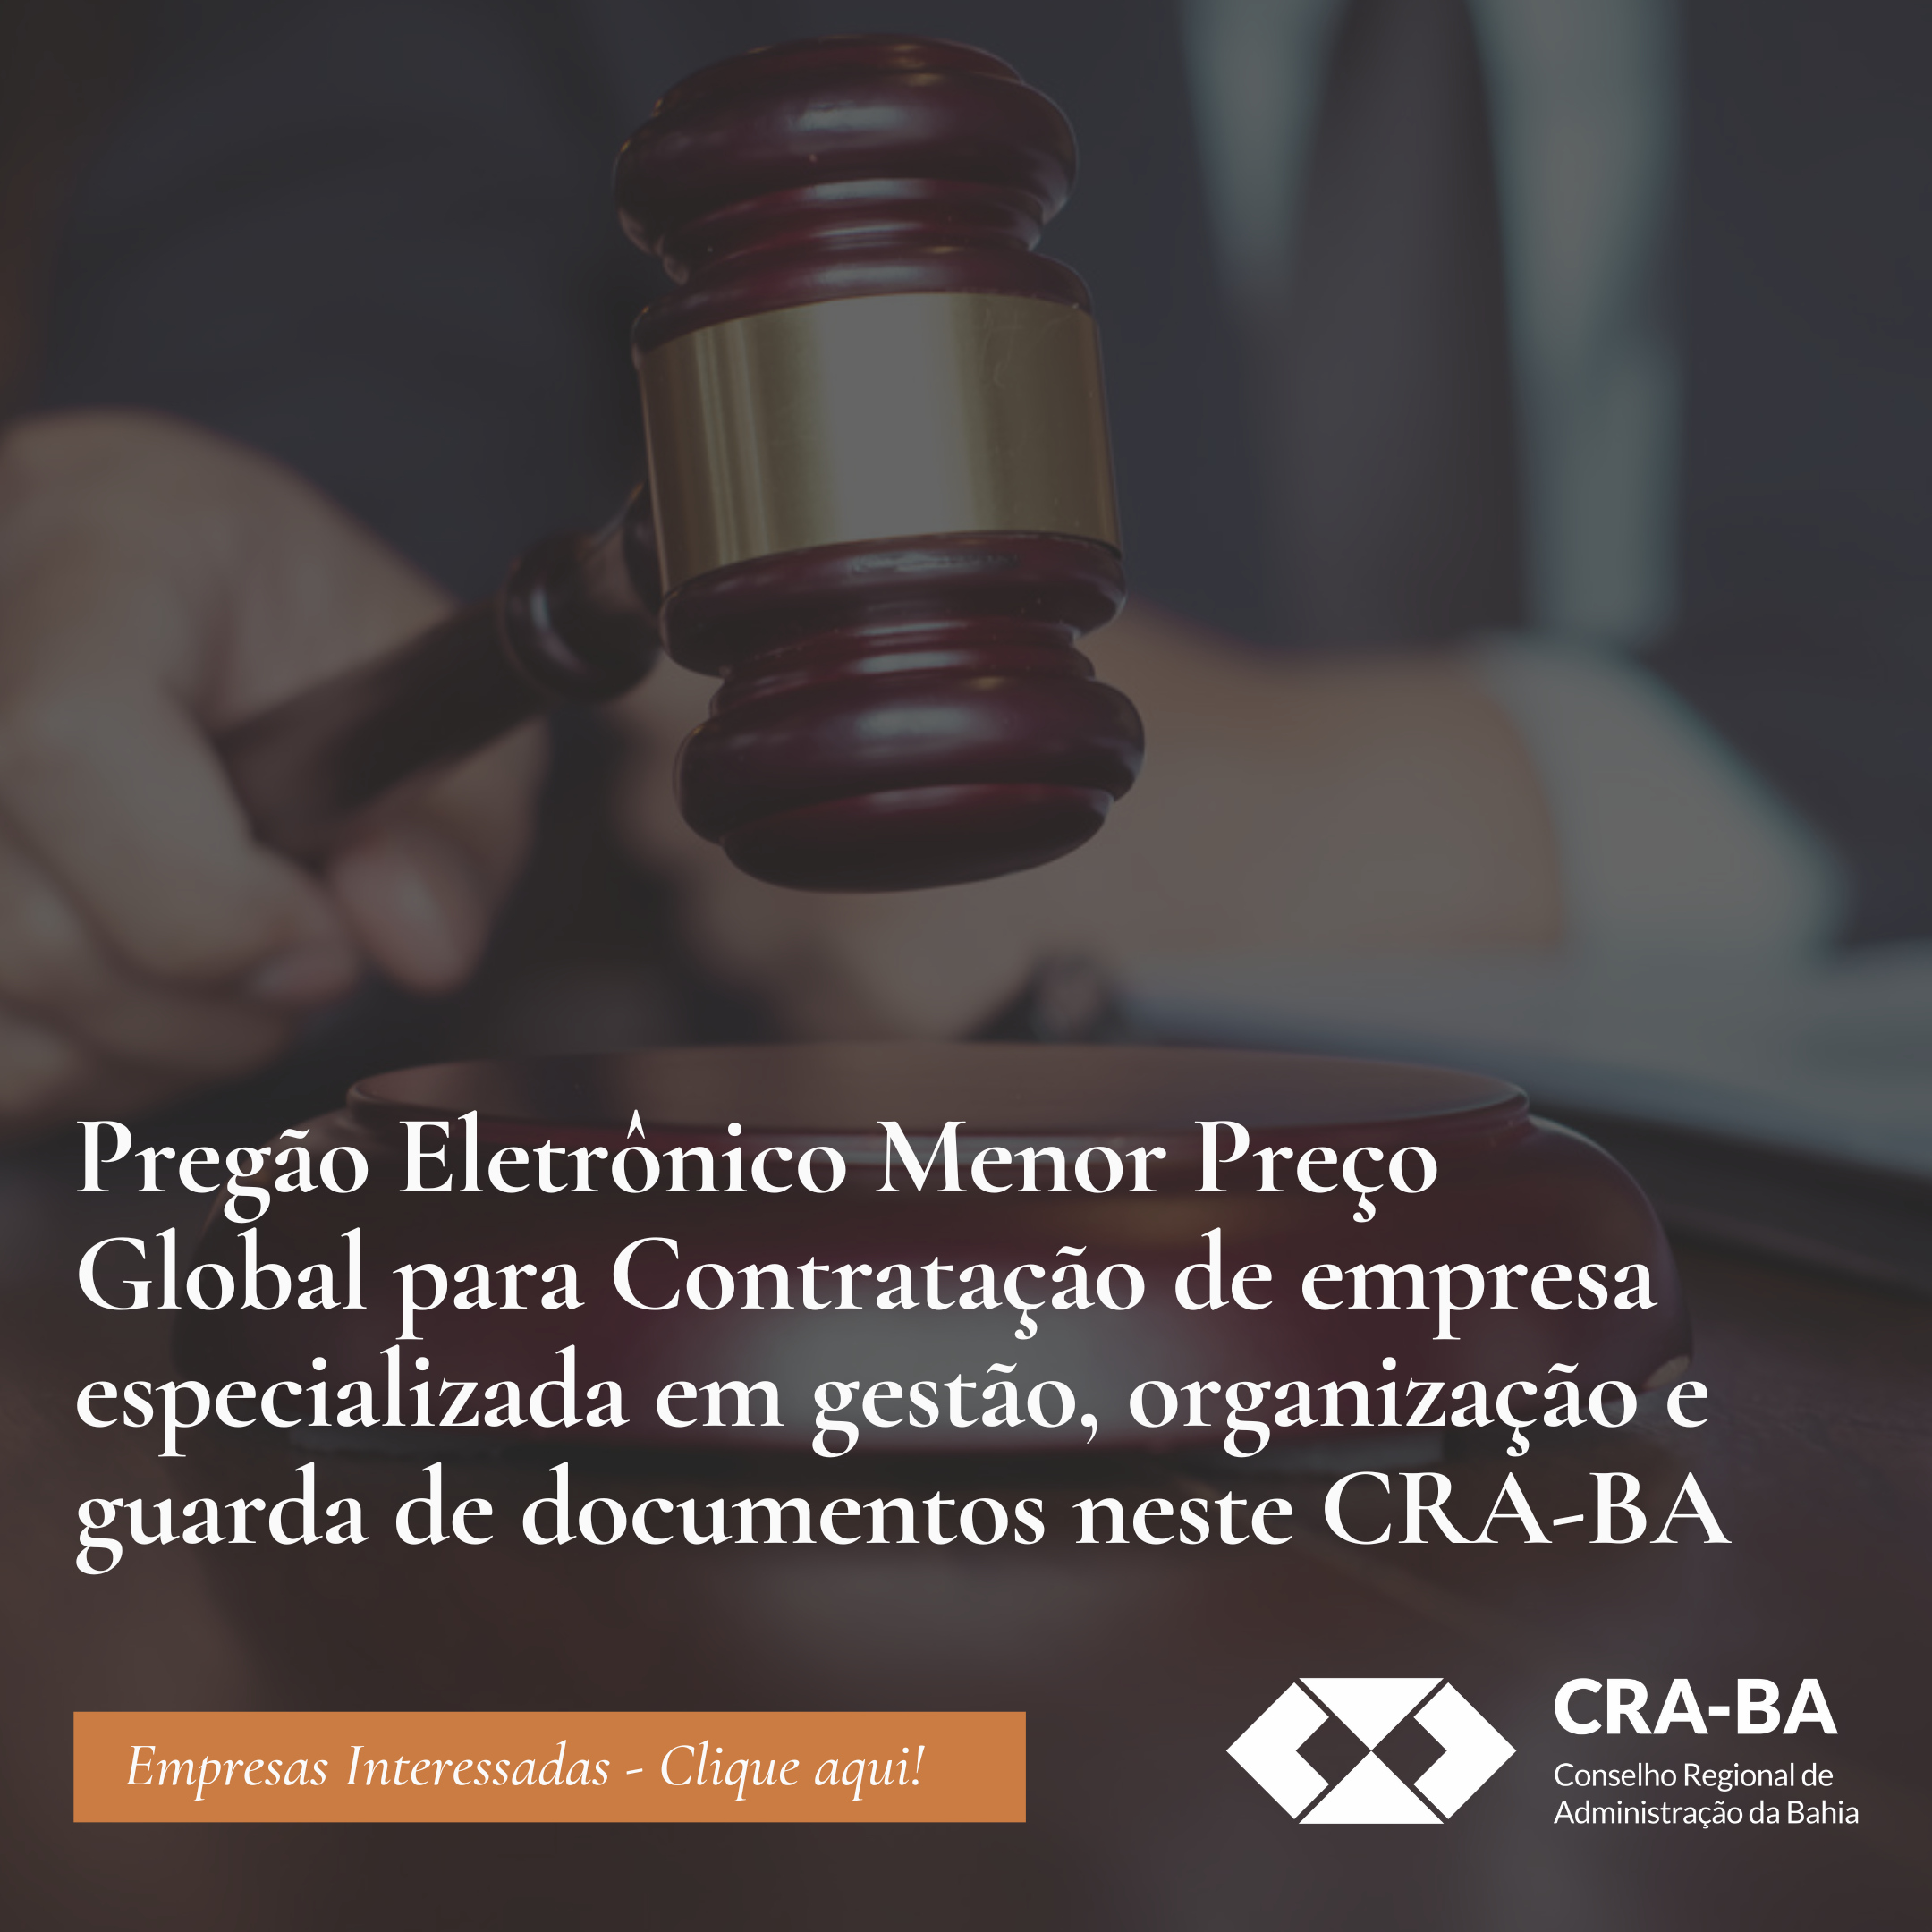 No momento você está vendo Pregão Eletrônico Menor Preço Global para Contratação de empresa especializada em gestão, organização e guarda de documentos neste CRA-BA